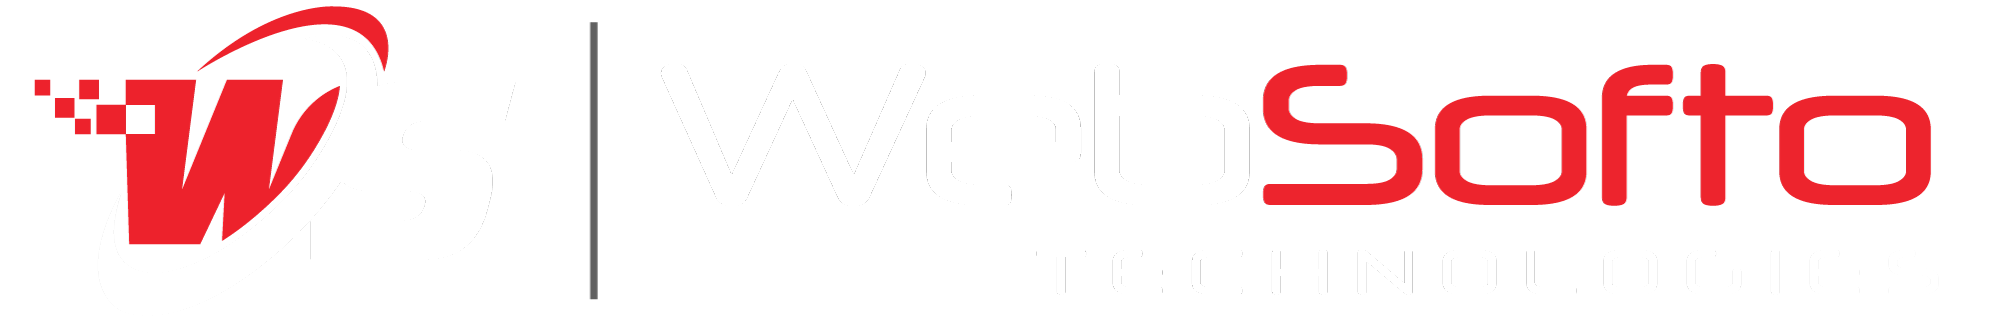 Websofto Footer Logo